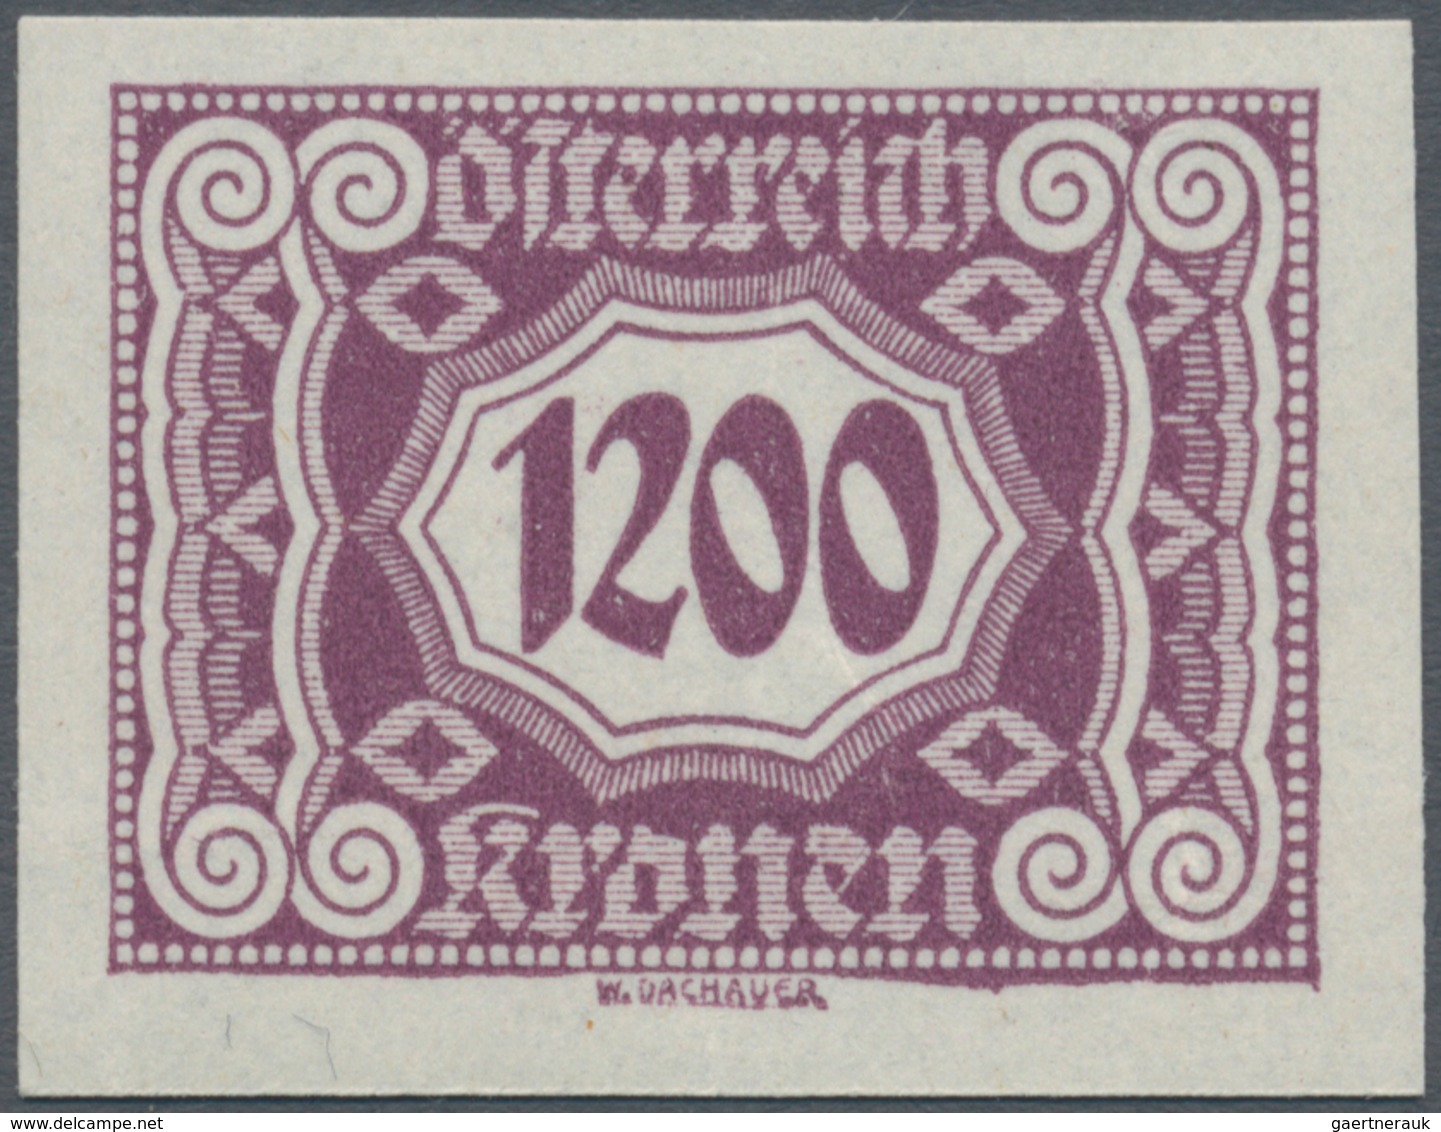 Österreich - Portomarken: 1922/1924, 100 Kr. bis 6000 Kr., komplette Serie von 14 Werten UNGEZÄHNT,